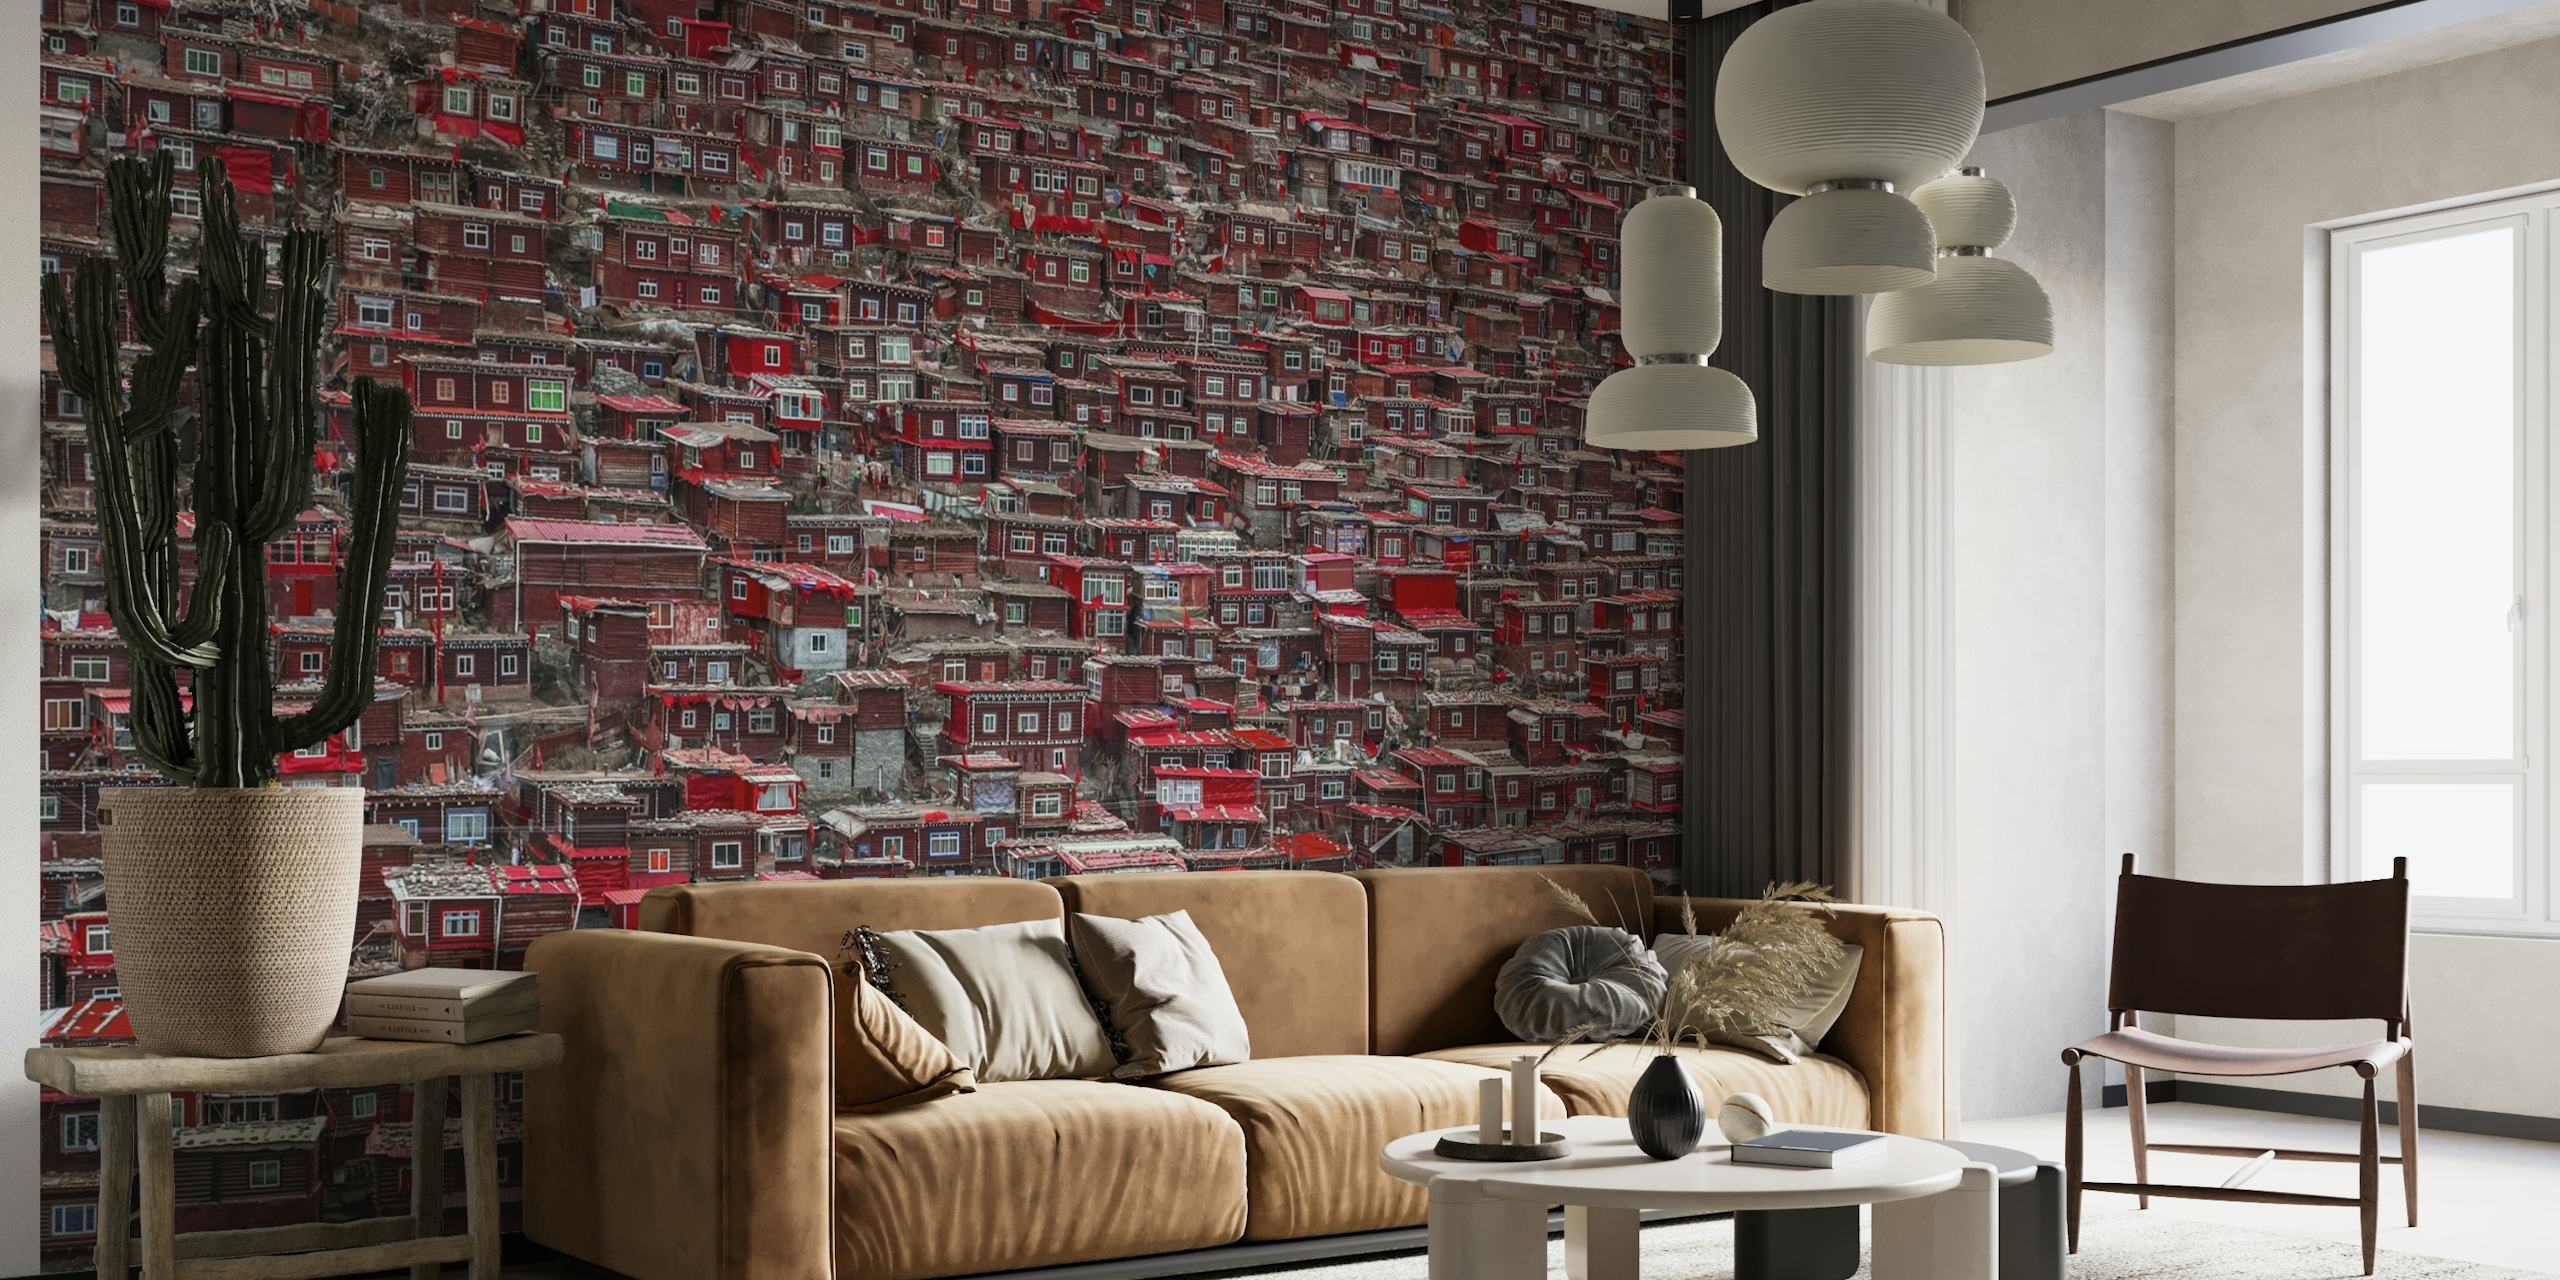 Tiheästi pakattuista punakattoisista taloista koostuva seinämaalaus, joka luo elävän, monimutkaisen kaupunkikuvan